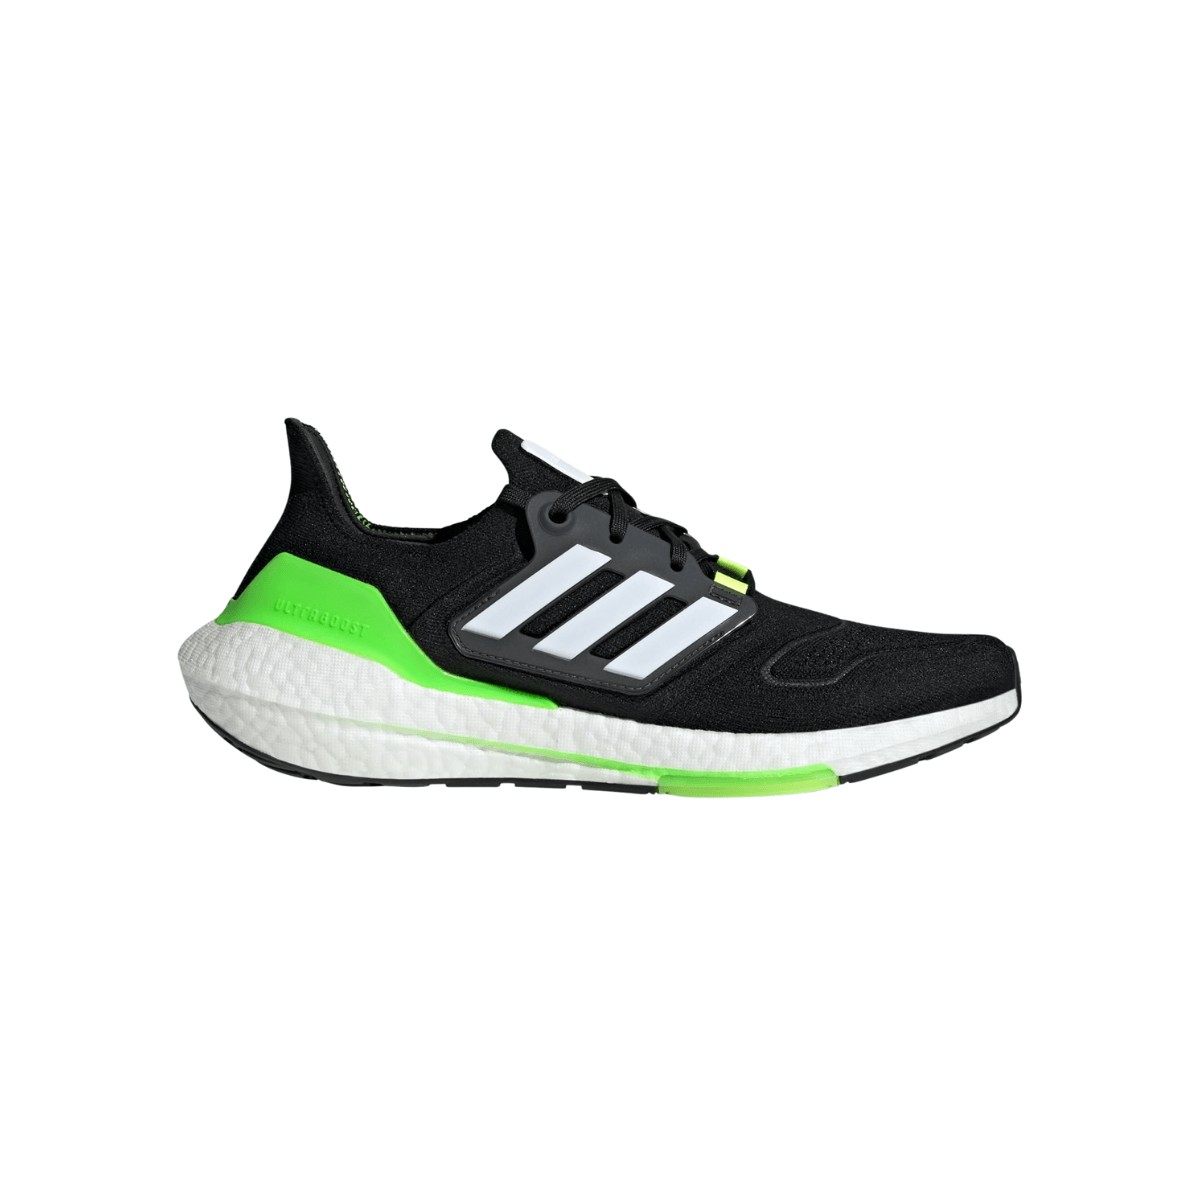 implicar Apellido cola Adidas Ultraboost 22: características y opiniones - Zapatillas running |  Runnea